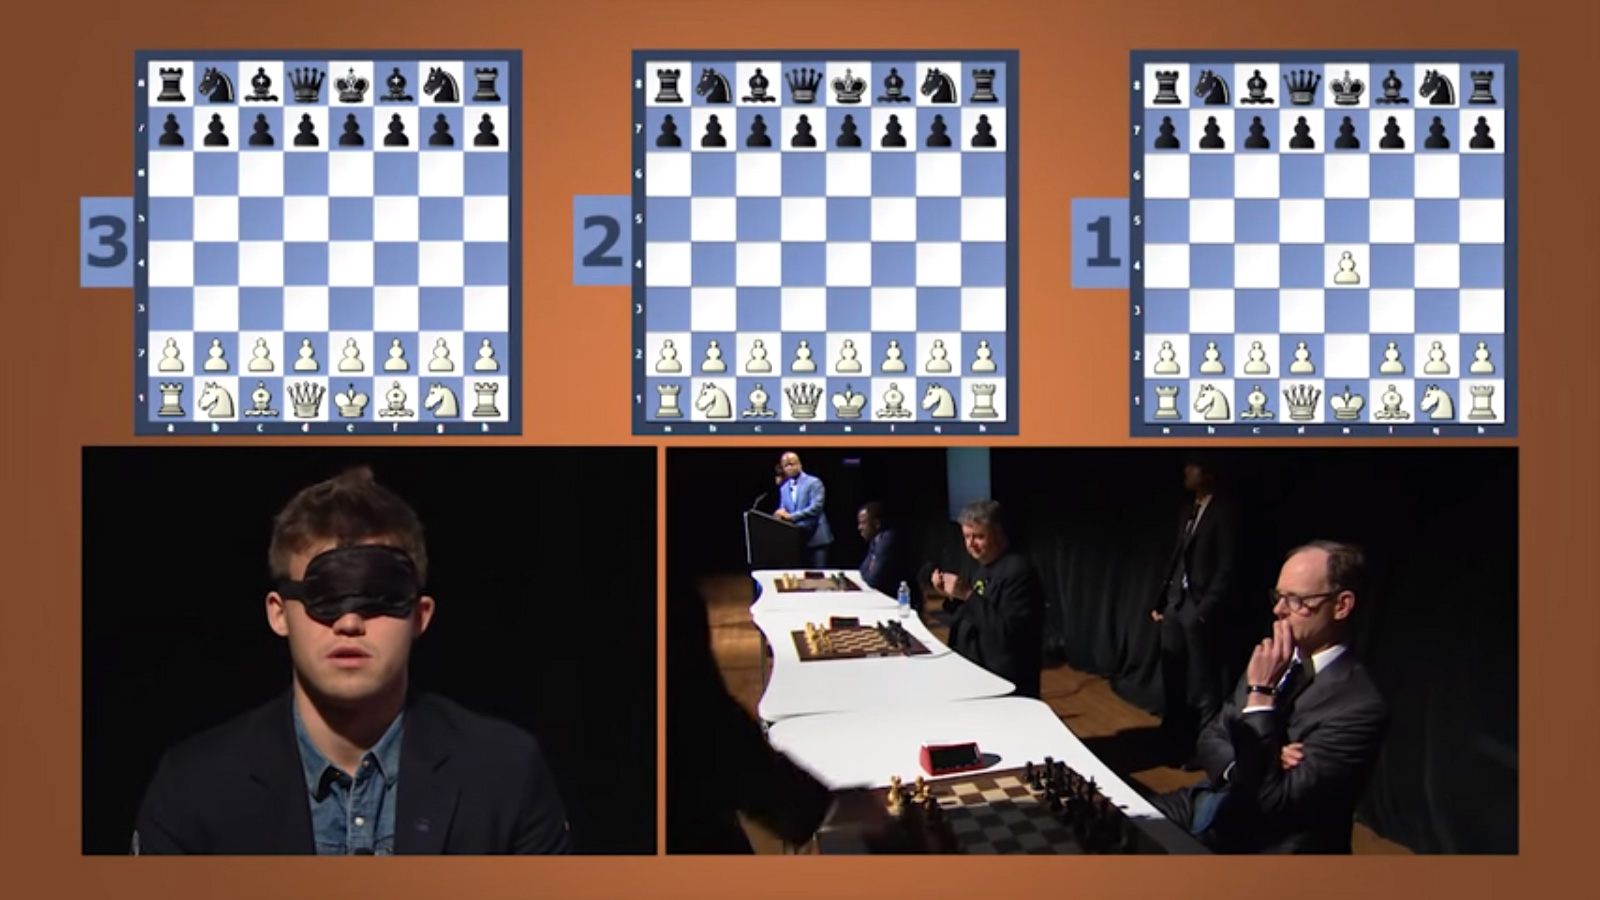 Enxadristas de Irecê na simultânea contra Magnus Carlsen